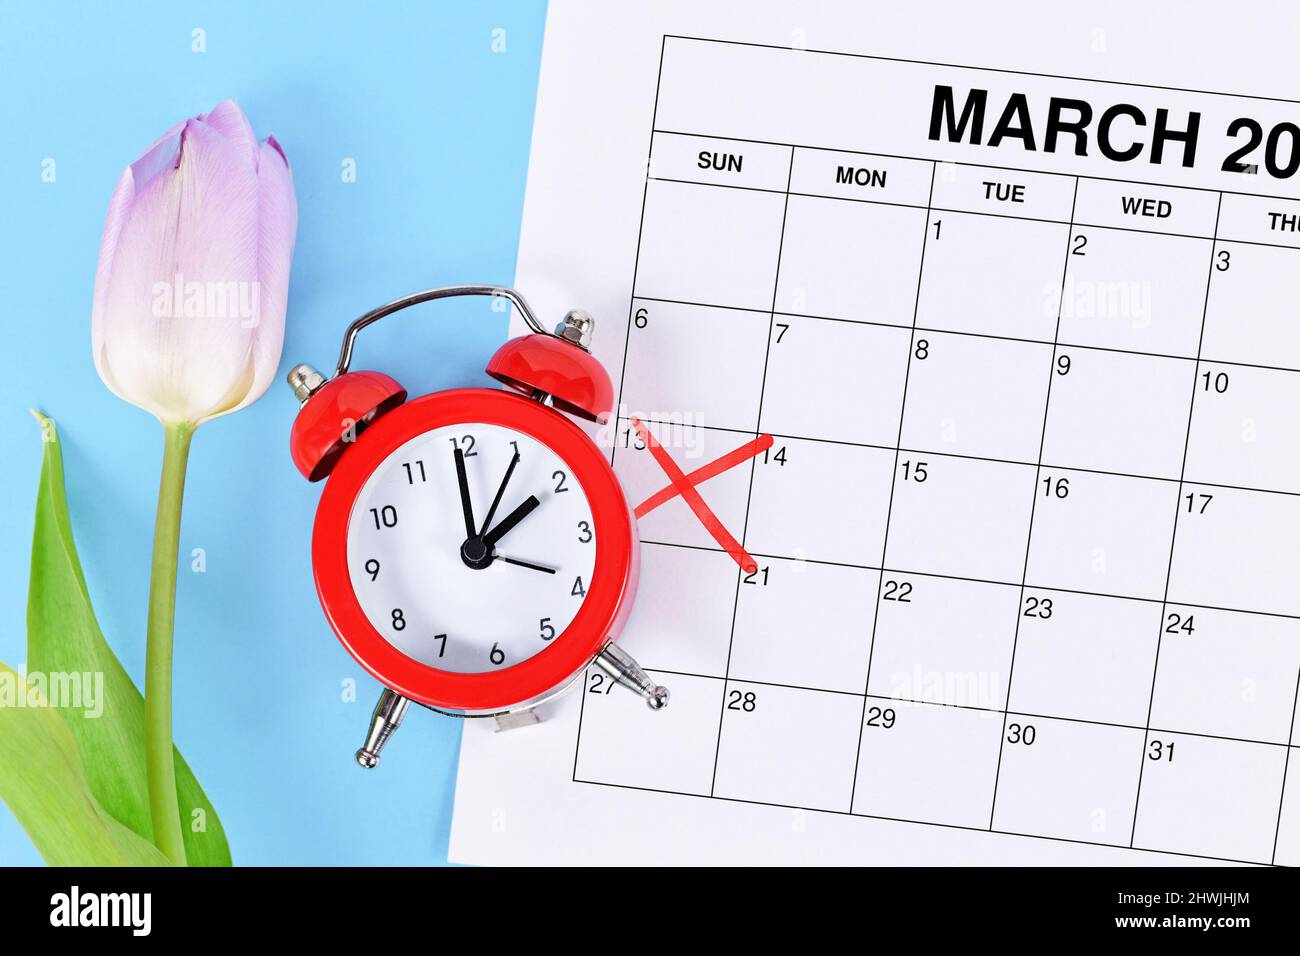 Concept de changement d'heure pour l'heure d'été aux États-Unis le 13th mars avec réveil rouge et feuille de calendrier avec date marquée en rouge sur bl Banque D'Images